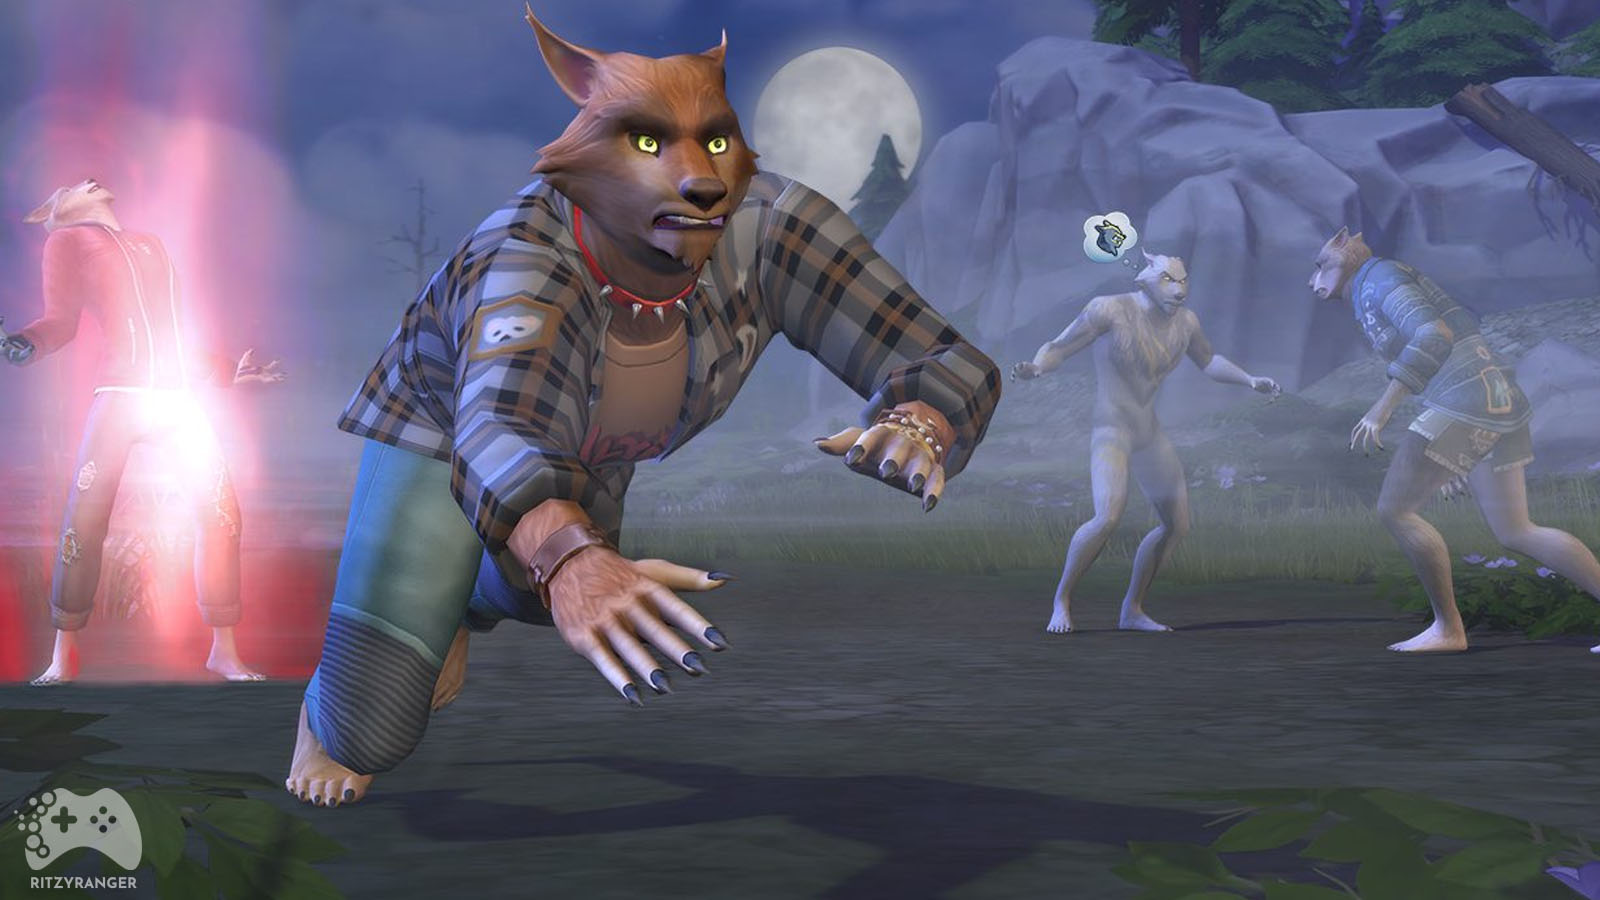 The Sims 4 Wilko艂aki - szczeg贸艂owe informacje i data premiery